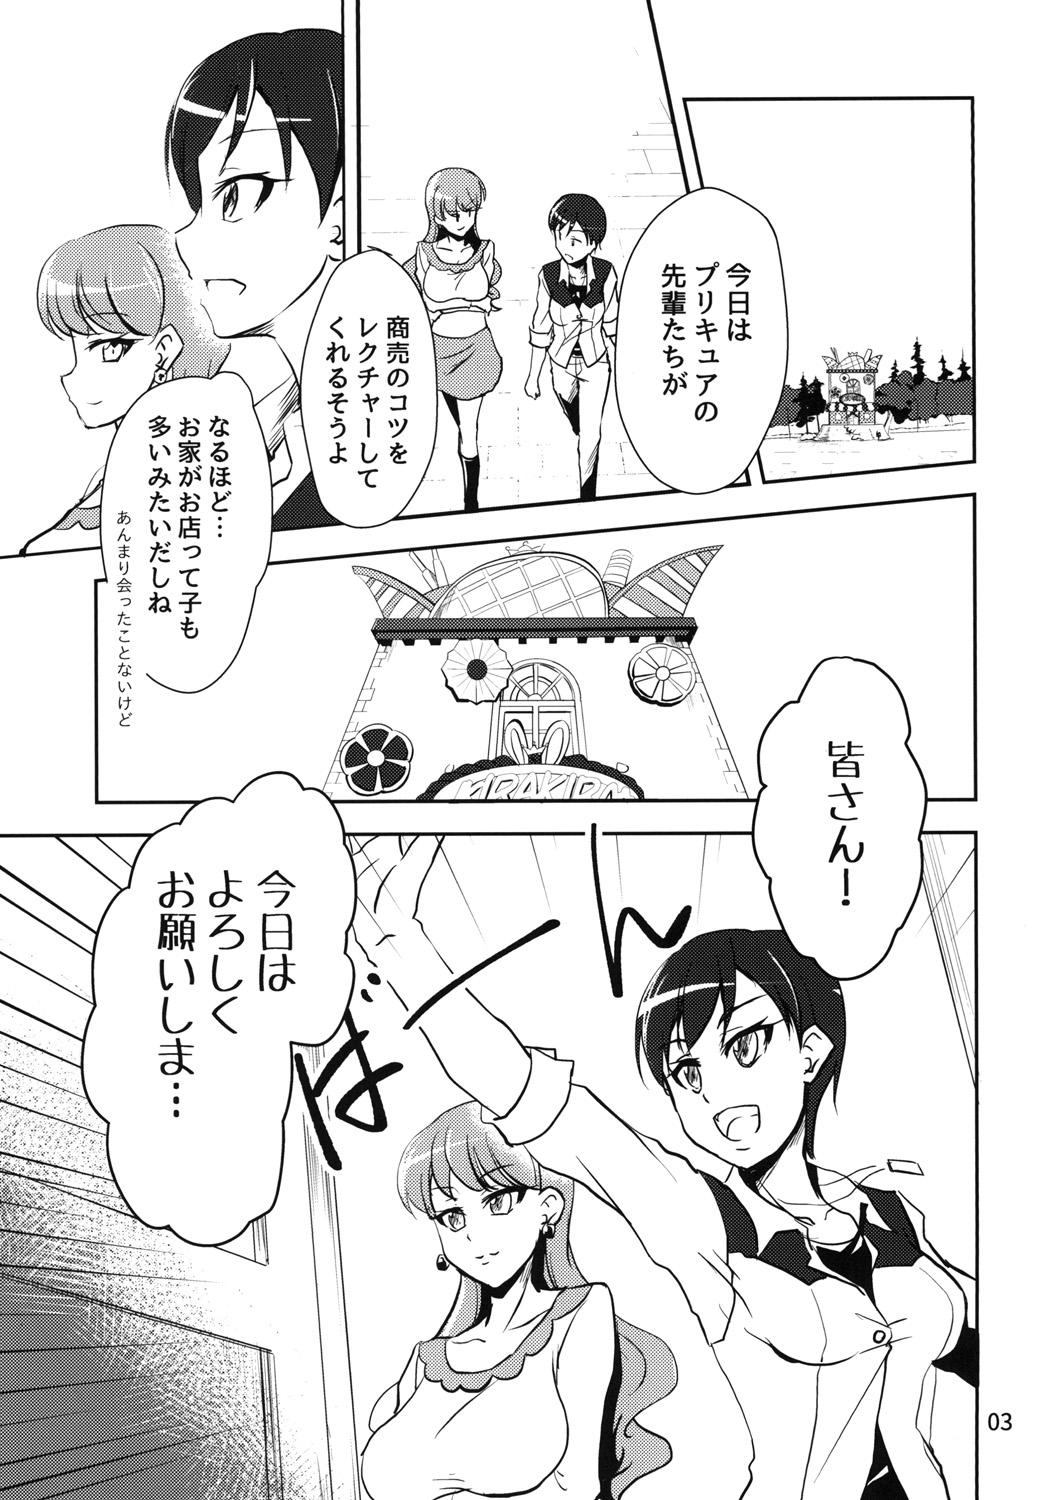 Threeway NamaCure - Kirakira precure a la mode Tgirls - Page 3